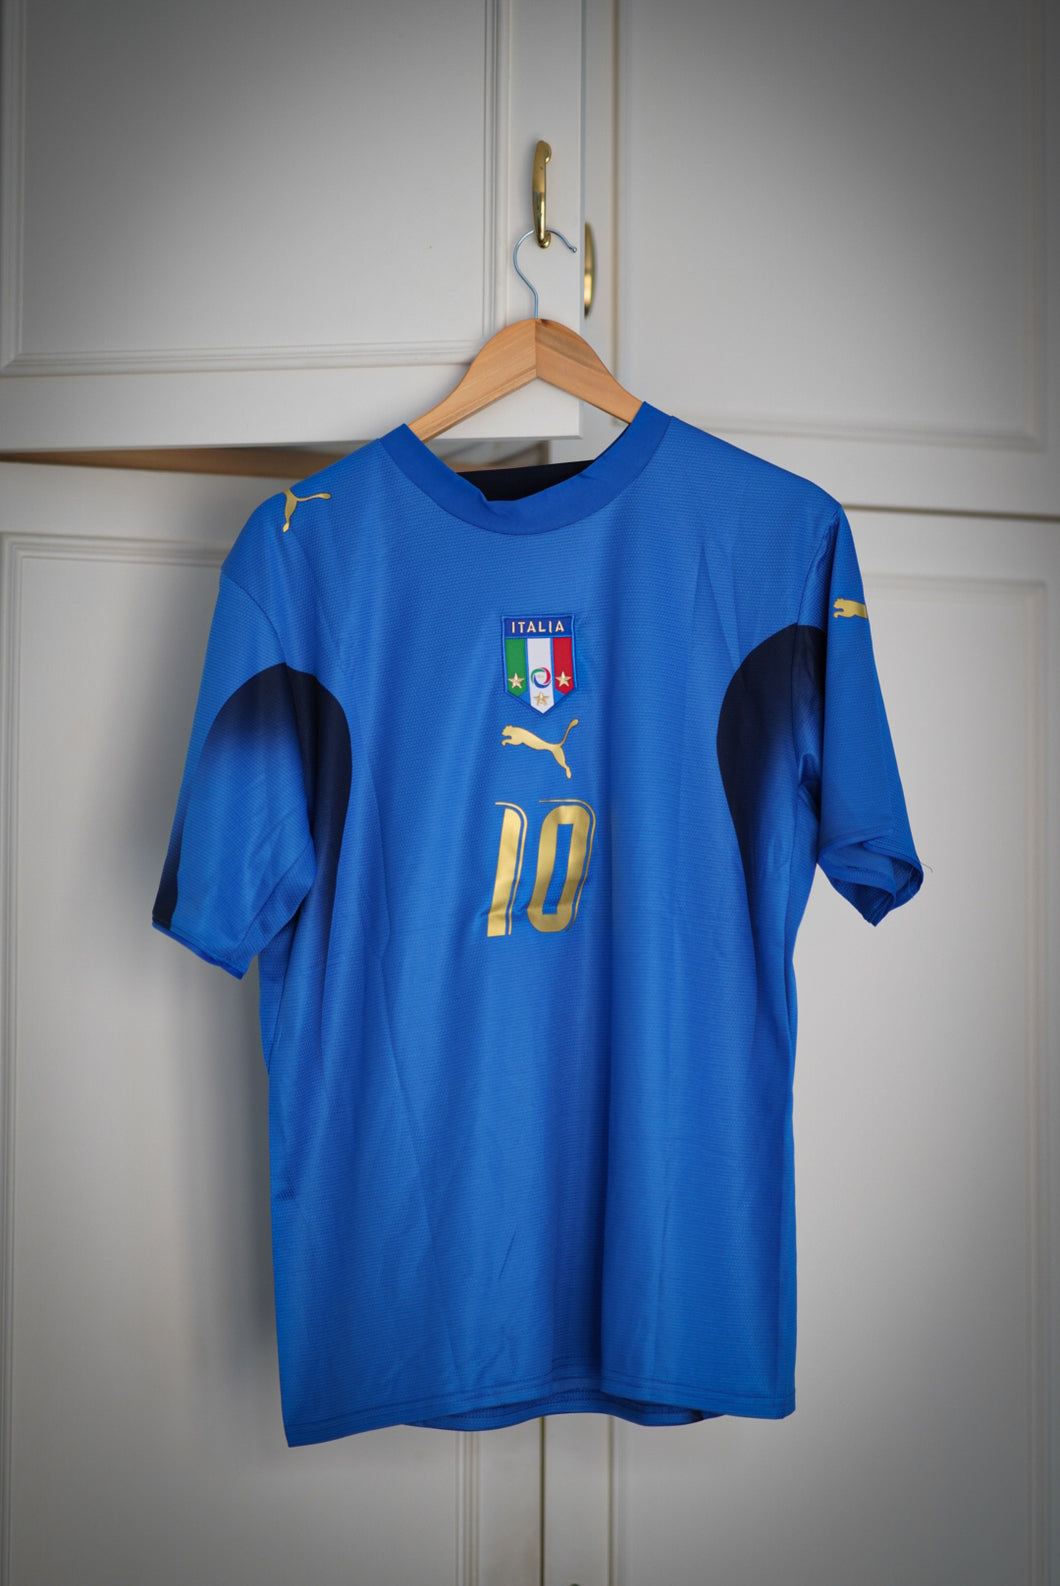 Totti, Italia Mundial 2006